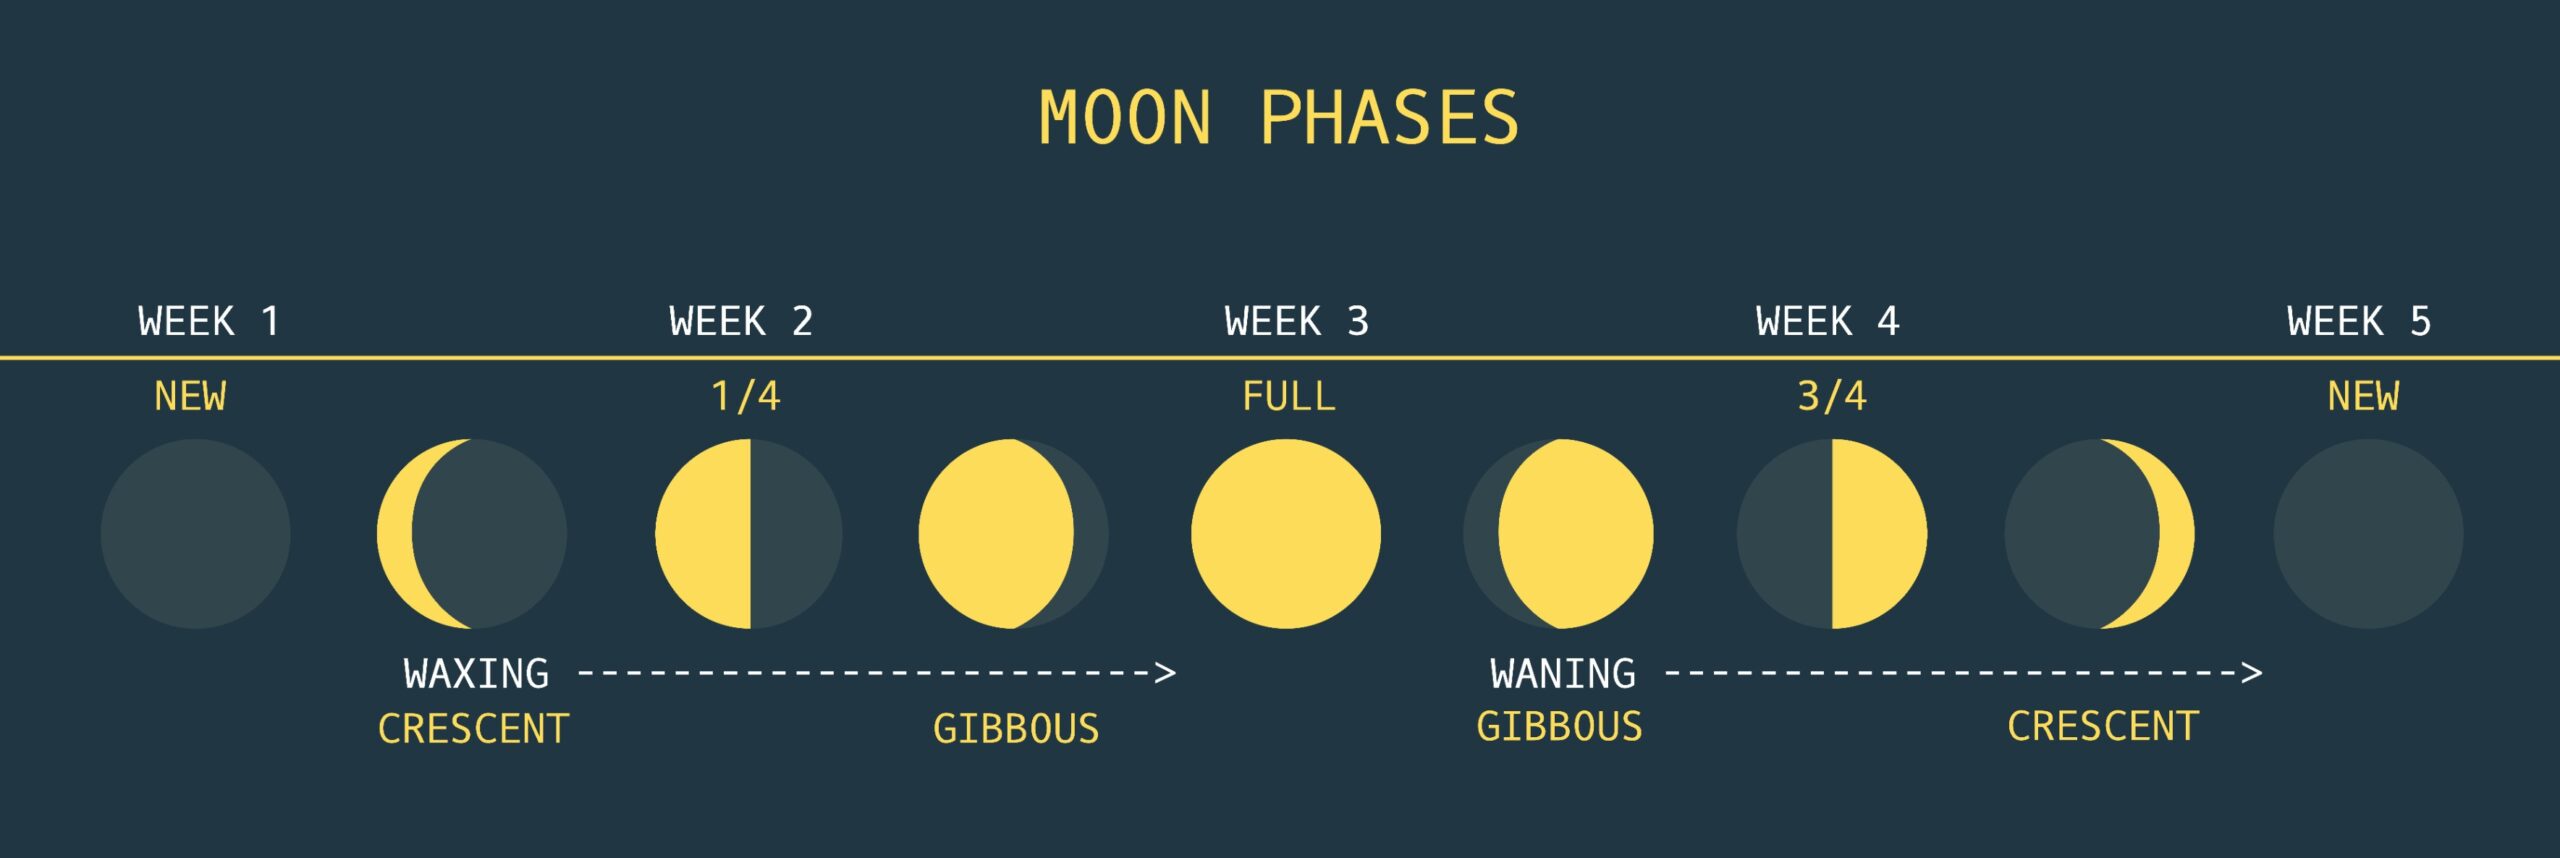 Mondphasen